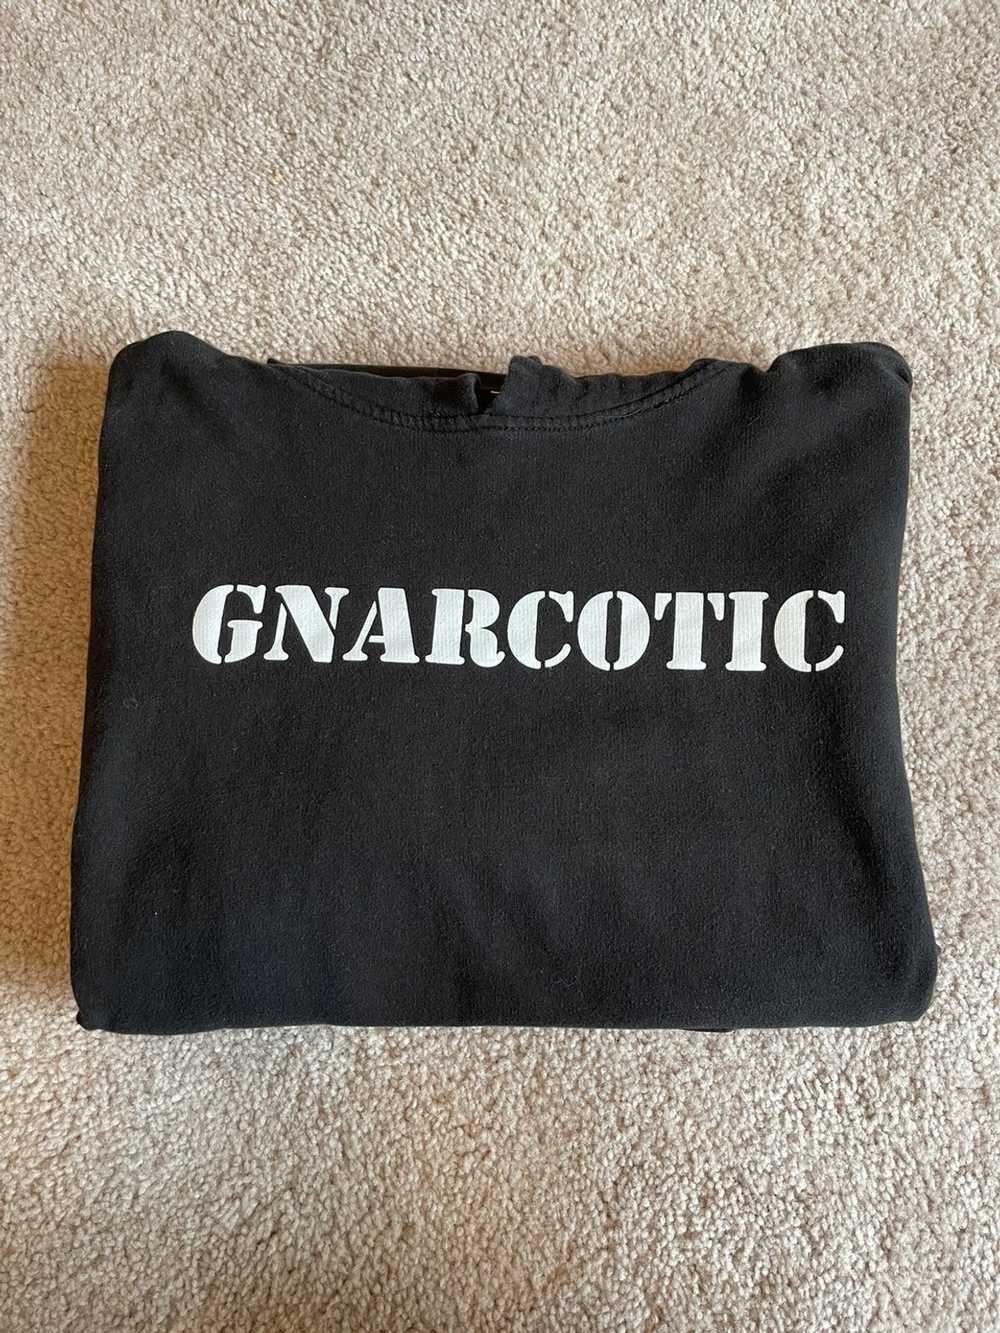 Gnarcotic × Streetwear Gnarcotic Gang Black Hoodie - image 1